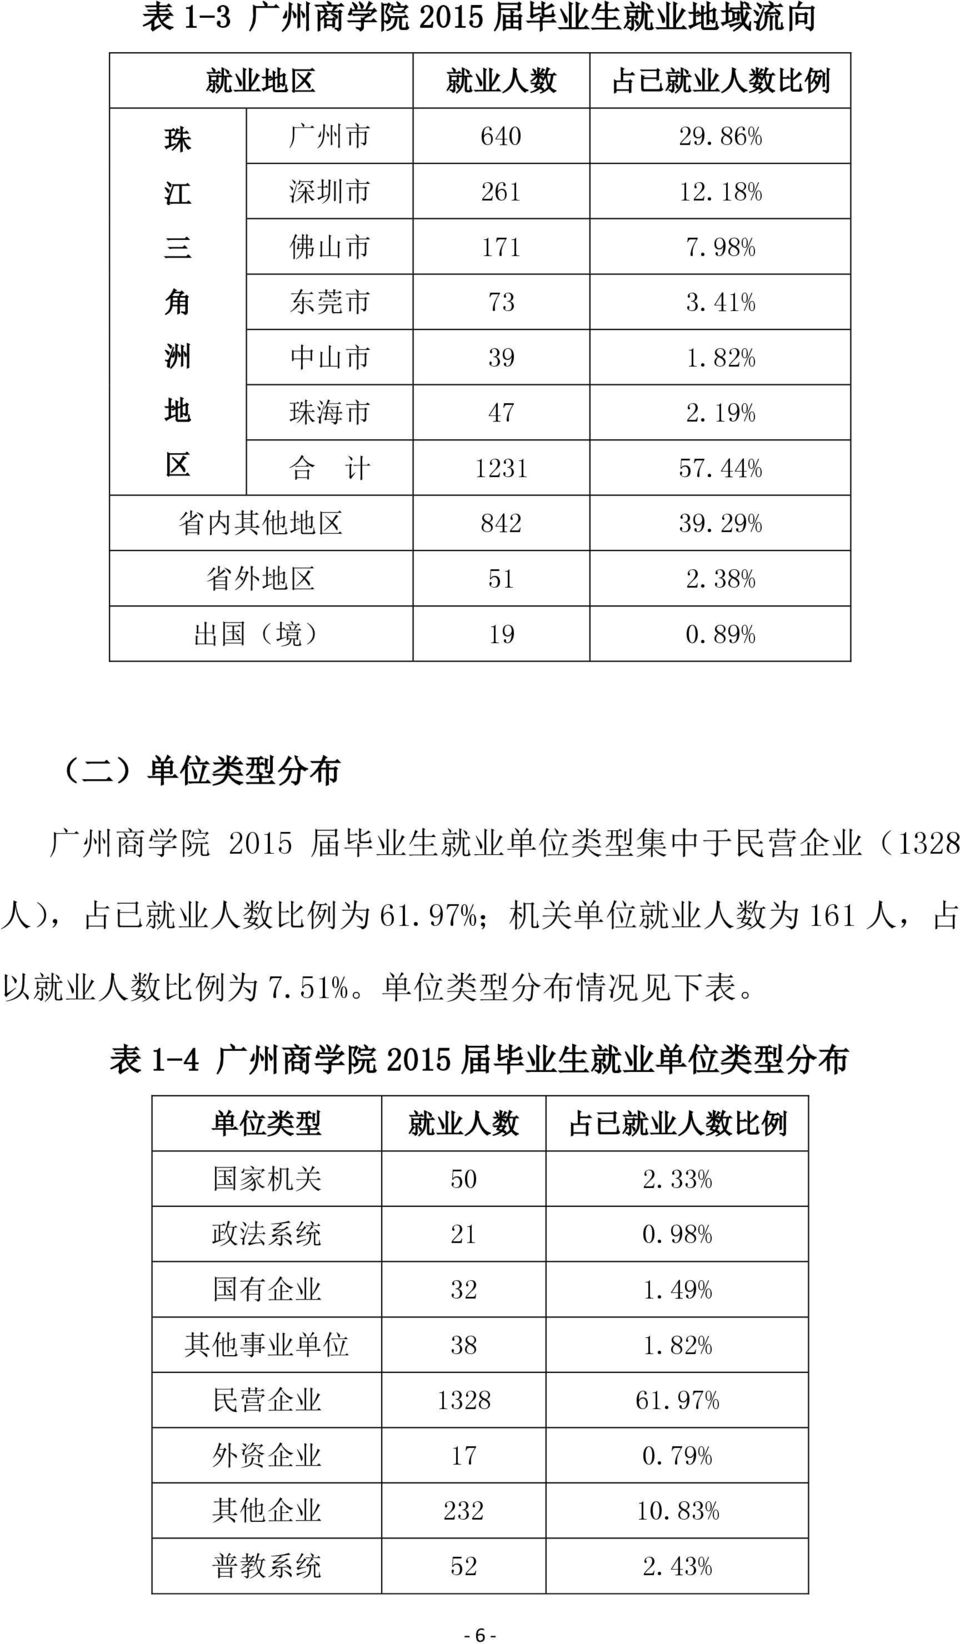 89% ( 二 ) 单 位 类 型 分 布 广 州 商 学 院 2015 届 毕 业 生 就 业 单 位 类 型 集 中 于 民 营 企 业 (1328 人 ), 占 已 就 业 人 数 比 例 为 61.97%; 机 关 单 位 就 业 人 数 为 161 人, 占 以 就 业 人 数 比 例 为 7.